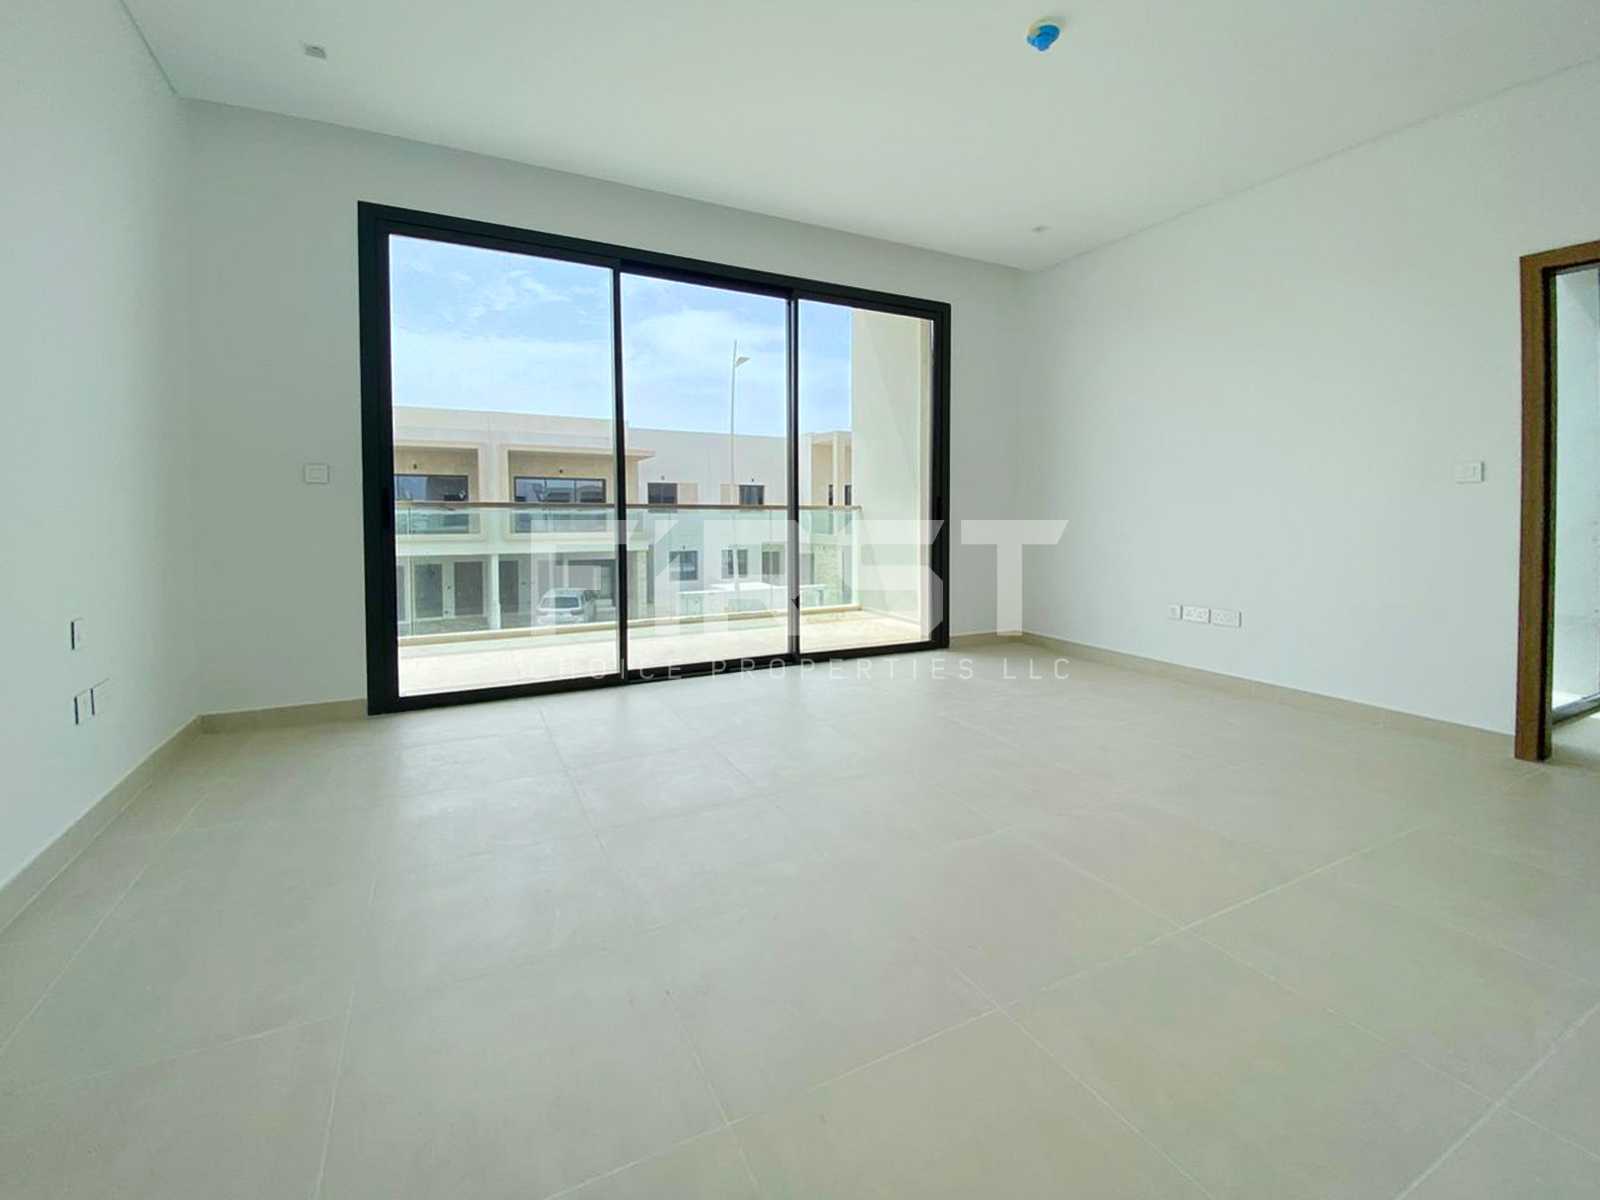 Internal Photo of 3 Bedroom Duplex Type Y in Yas Acres Yas Island Abu Dhabi UAE (1).jpg